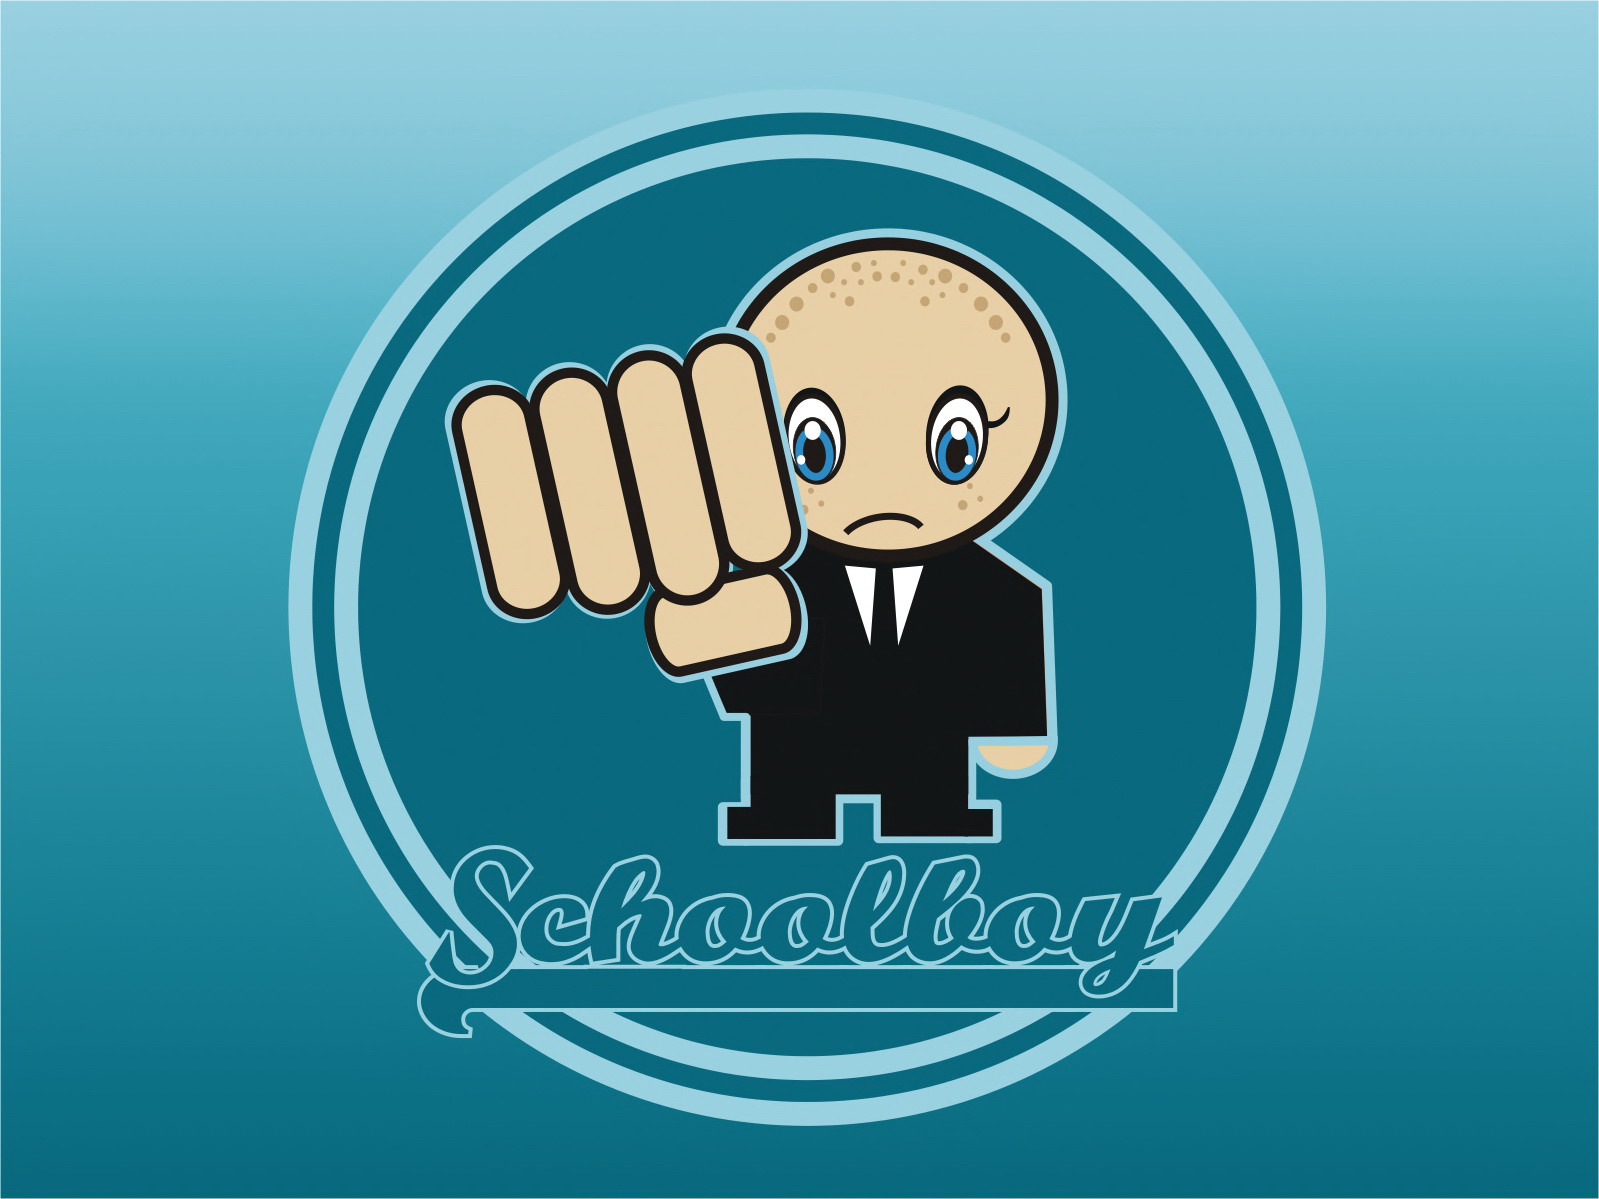 SchoolBoy by moritz